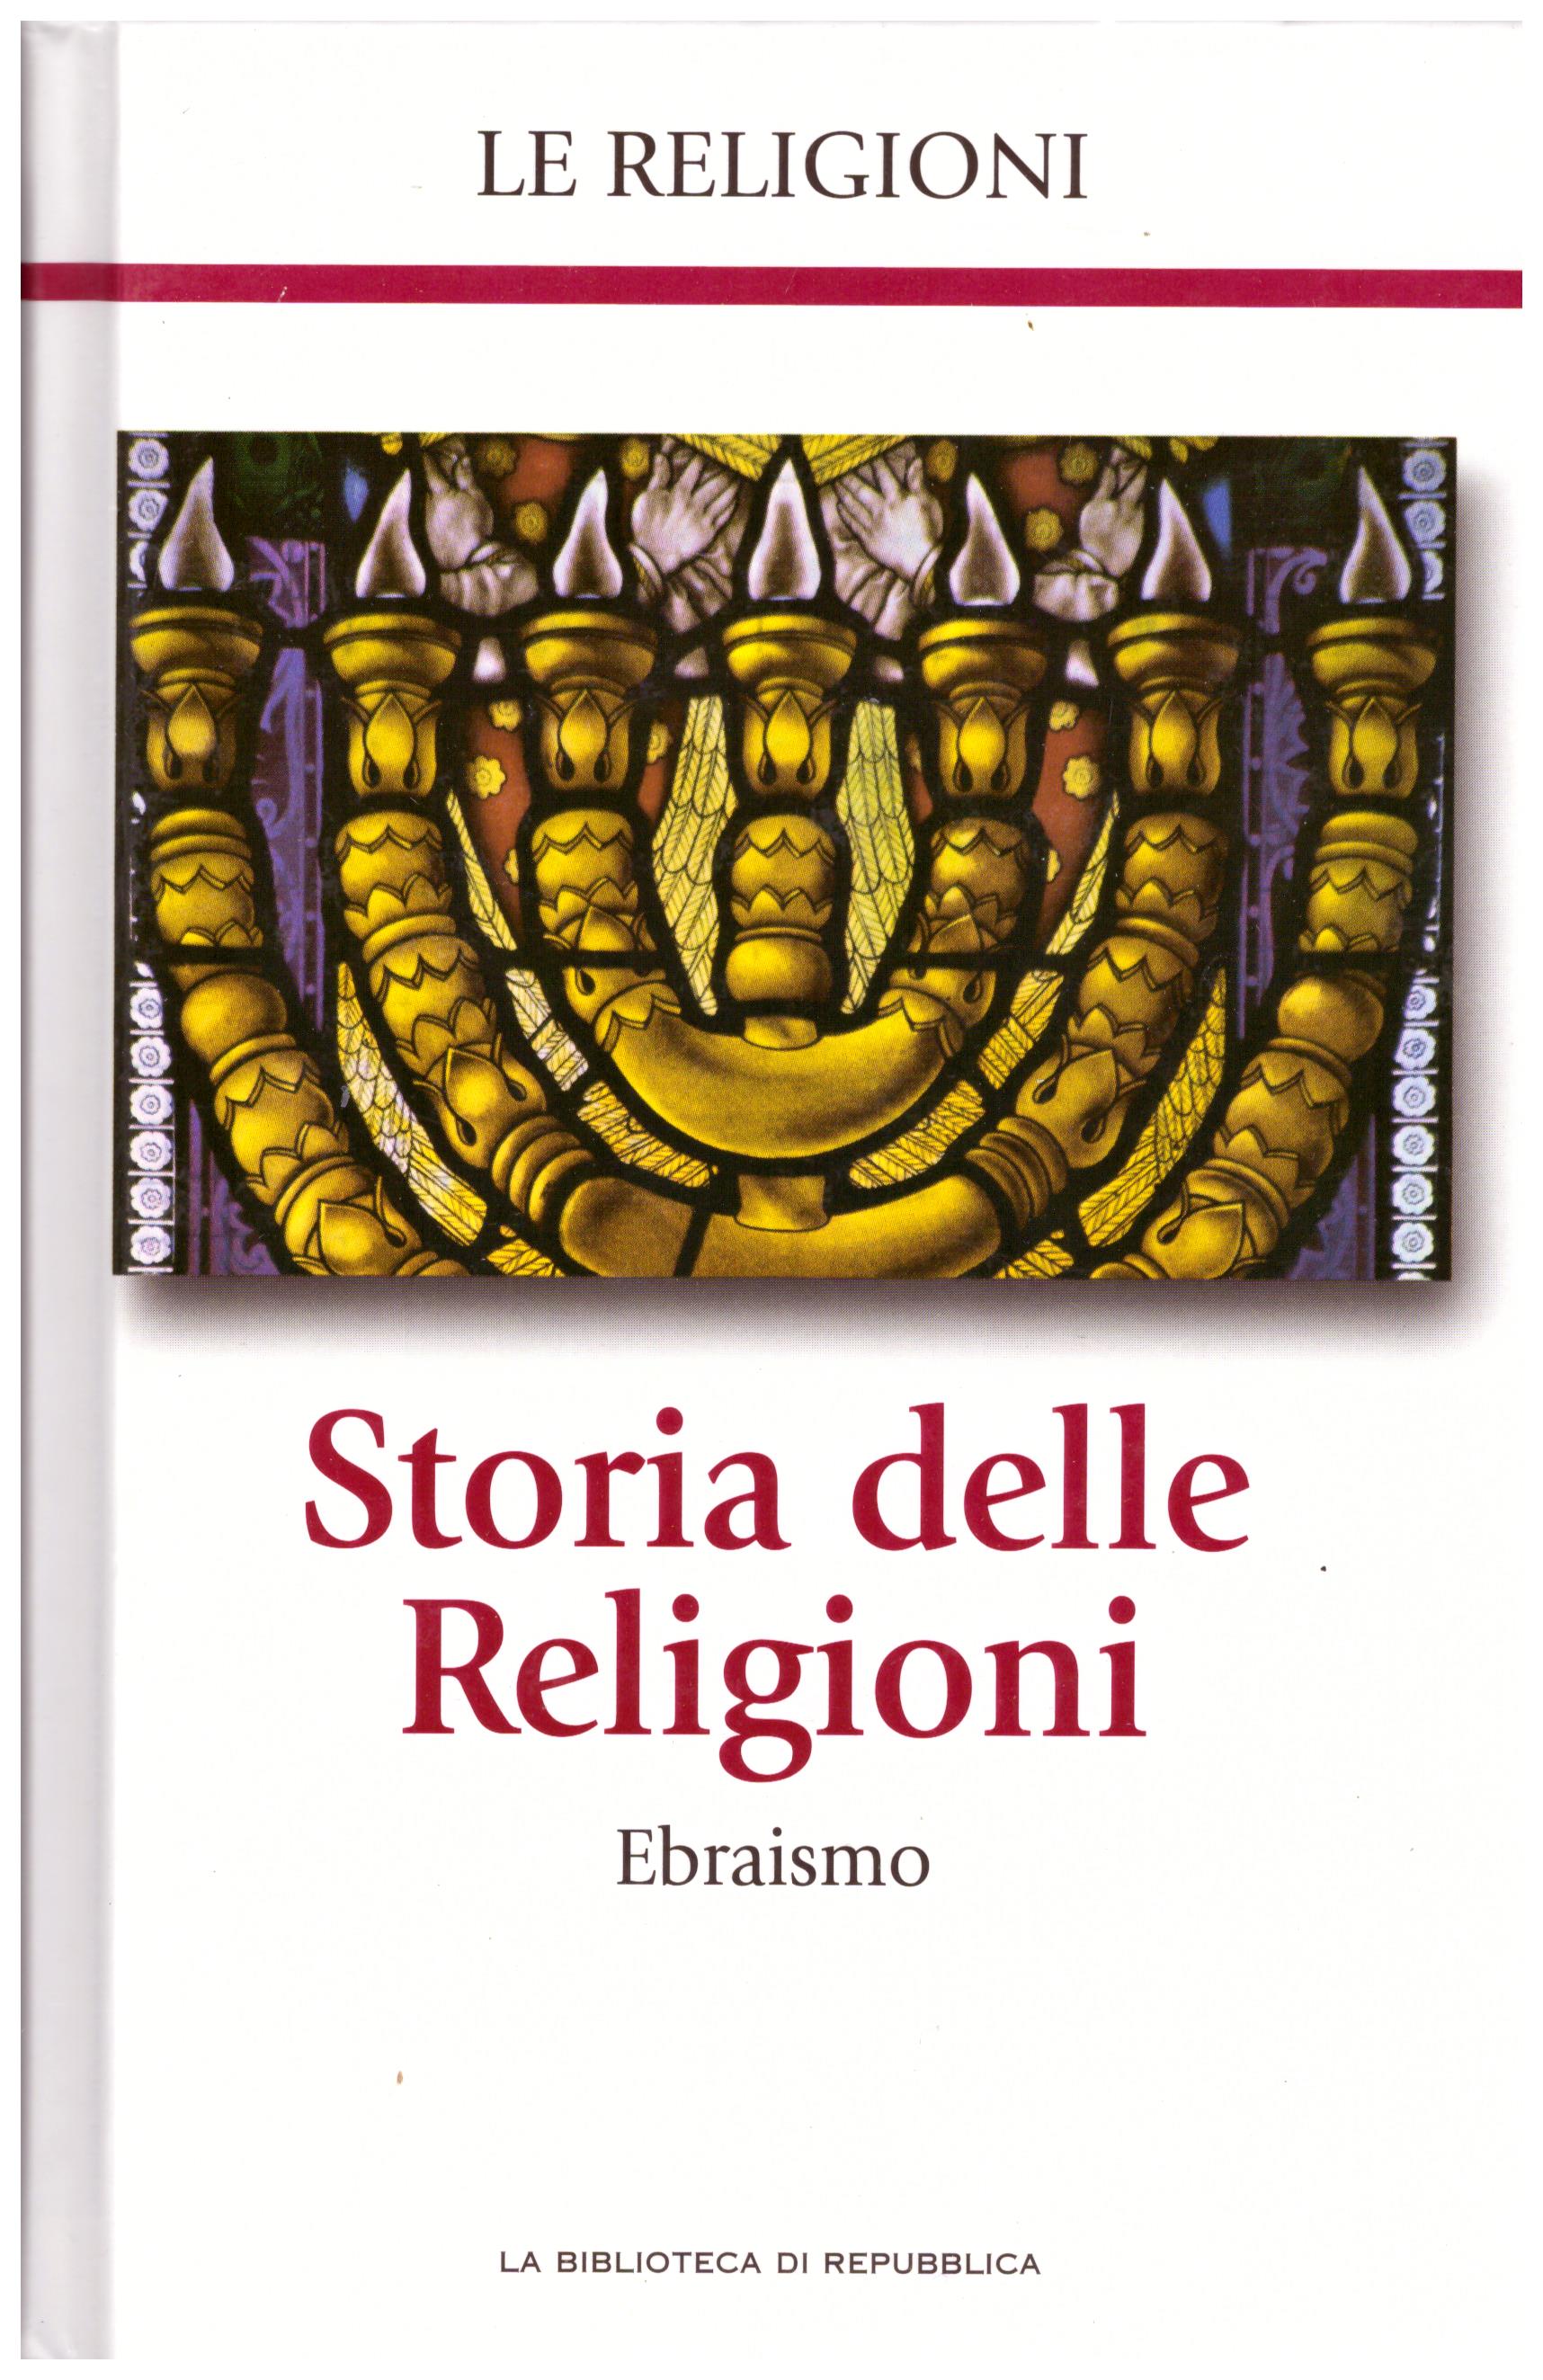 Titolo: Le religioni, Storia delle religioni, Ebraismo N.5      Autore: AA.VV, la biblioteca di Repubblica     Editore: Piemme